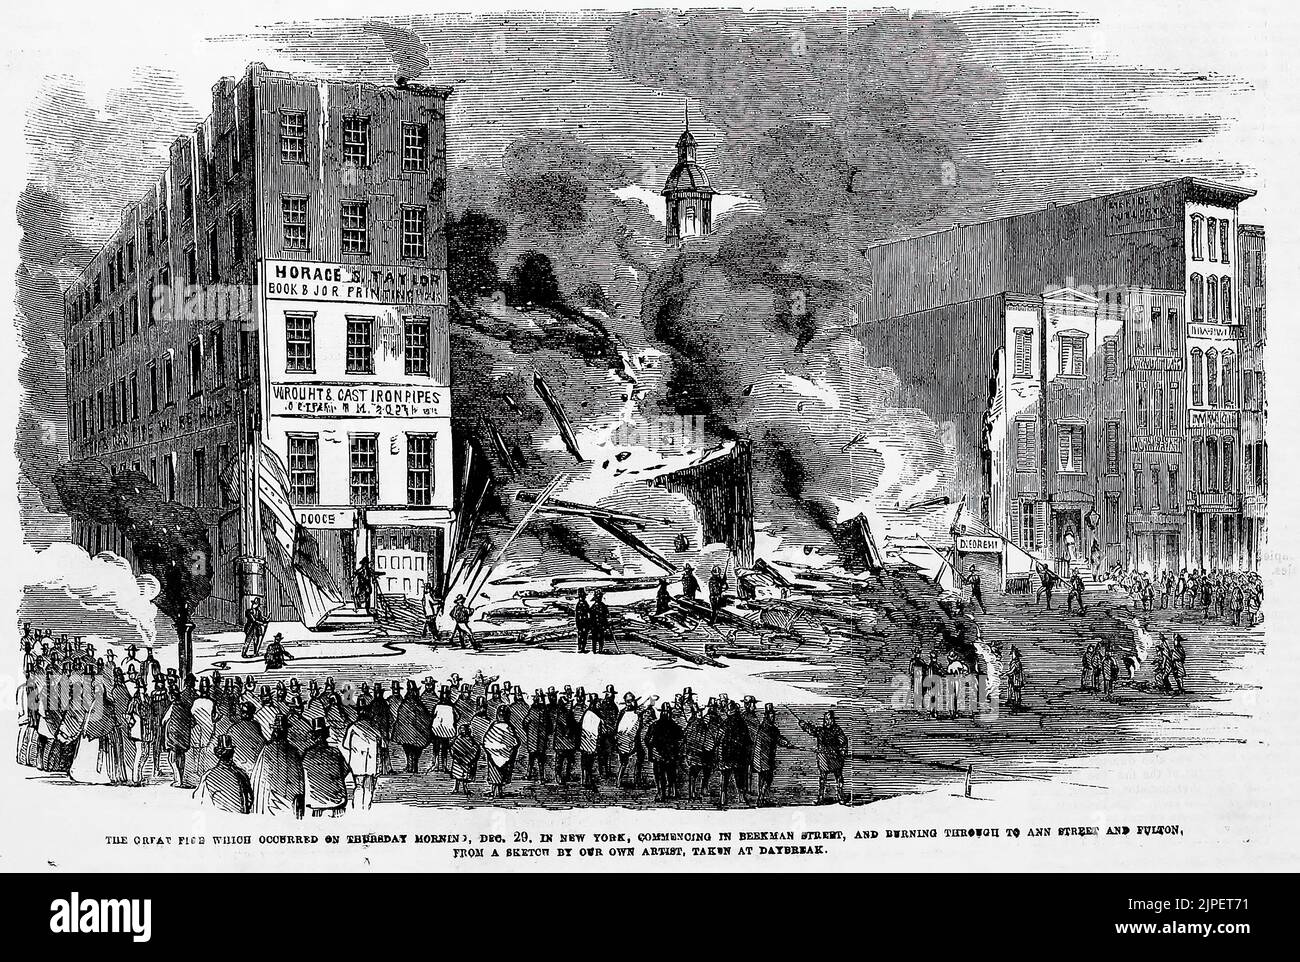 Il grande incendio che si verificò il giovedì mattina, 29th dicembre 1859, a New York, iniziando in Berman Street, e bruciando attraverso Ann Street e Fulton (1860). Illustrazione dal giornale illustrato di Frank Leslie Foto Stock